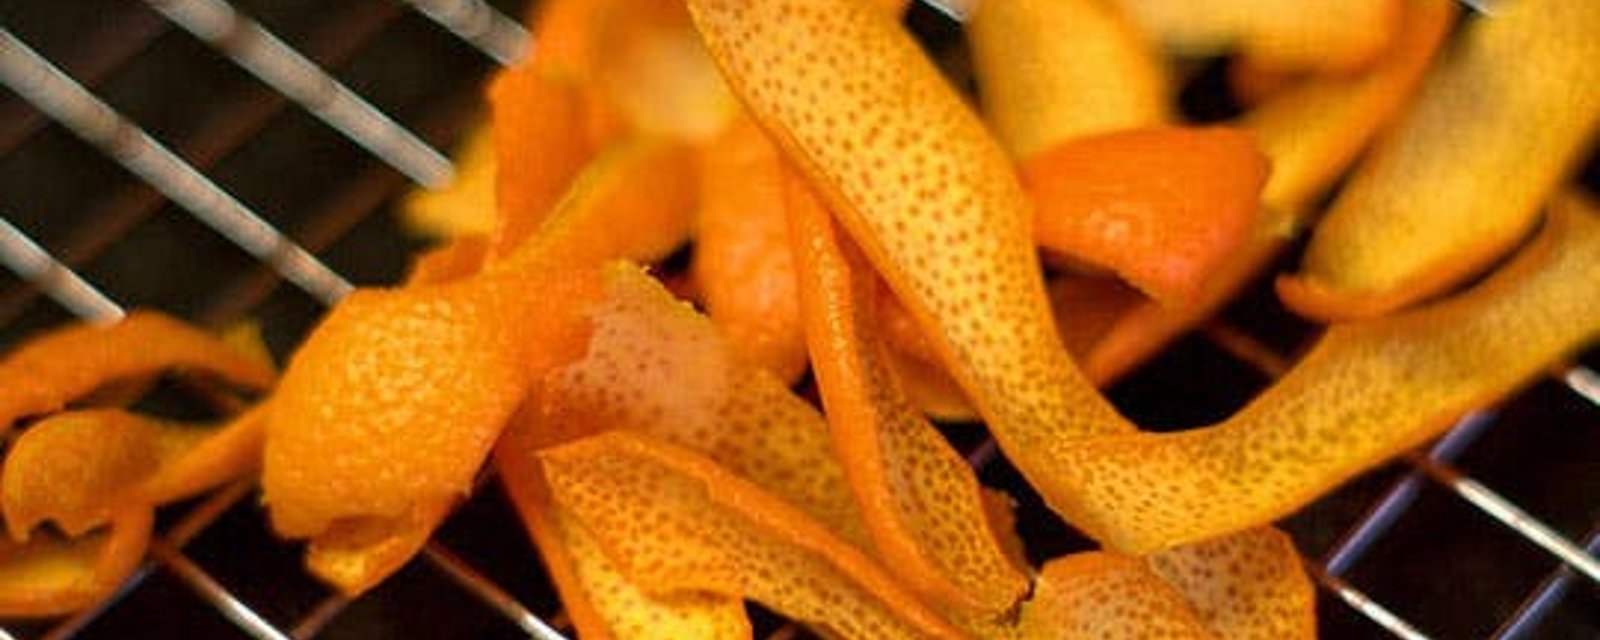 15 façons de réutiliser les pelures d'oranges à travers la maison